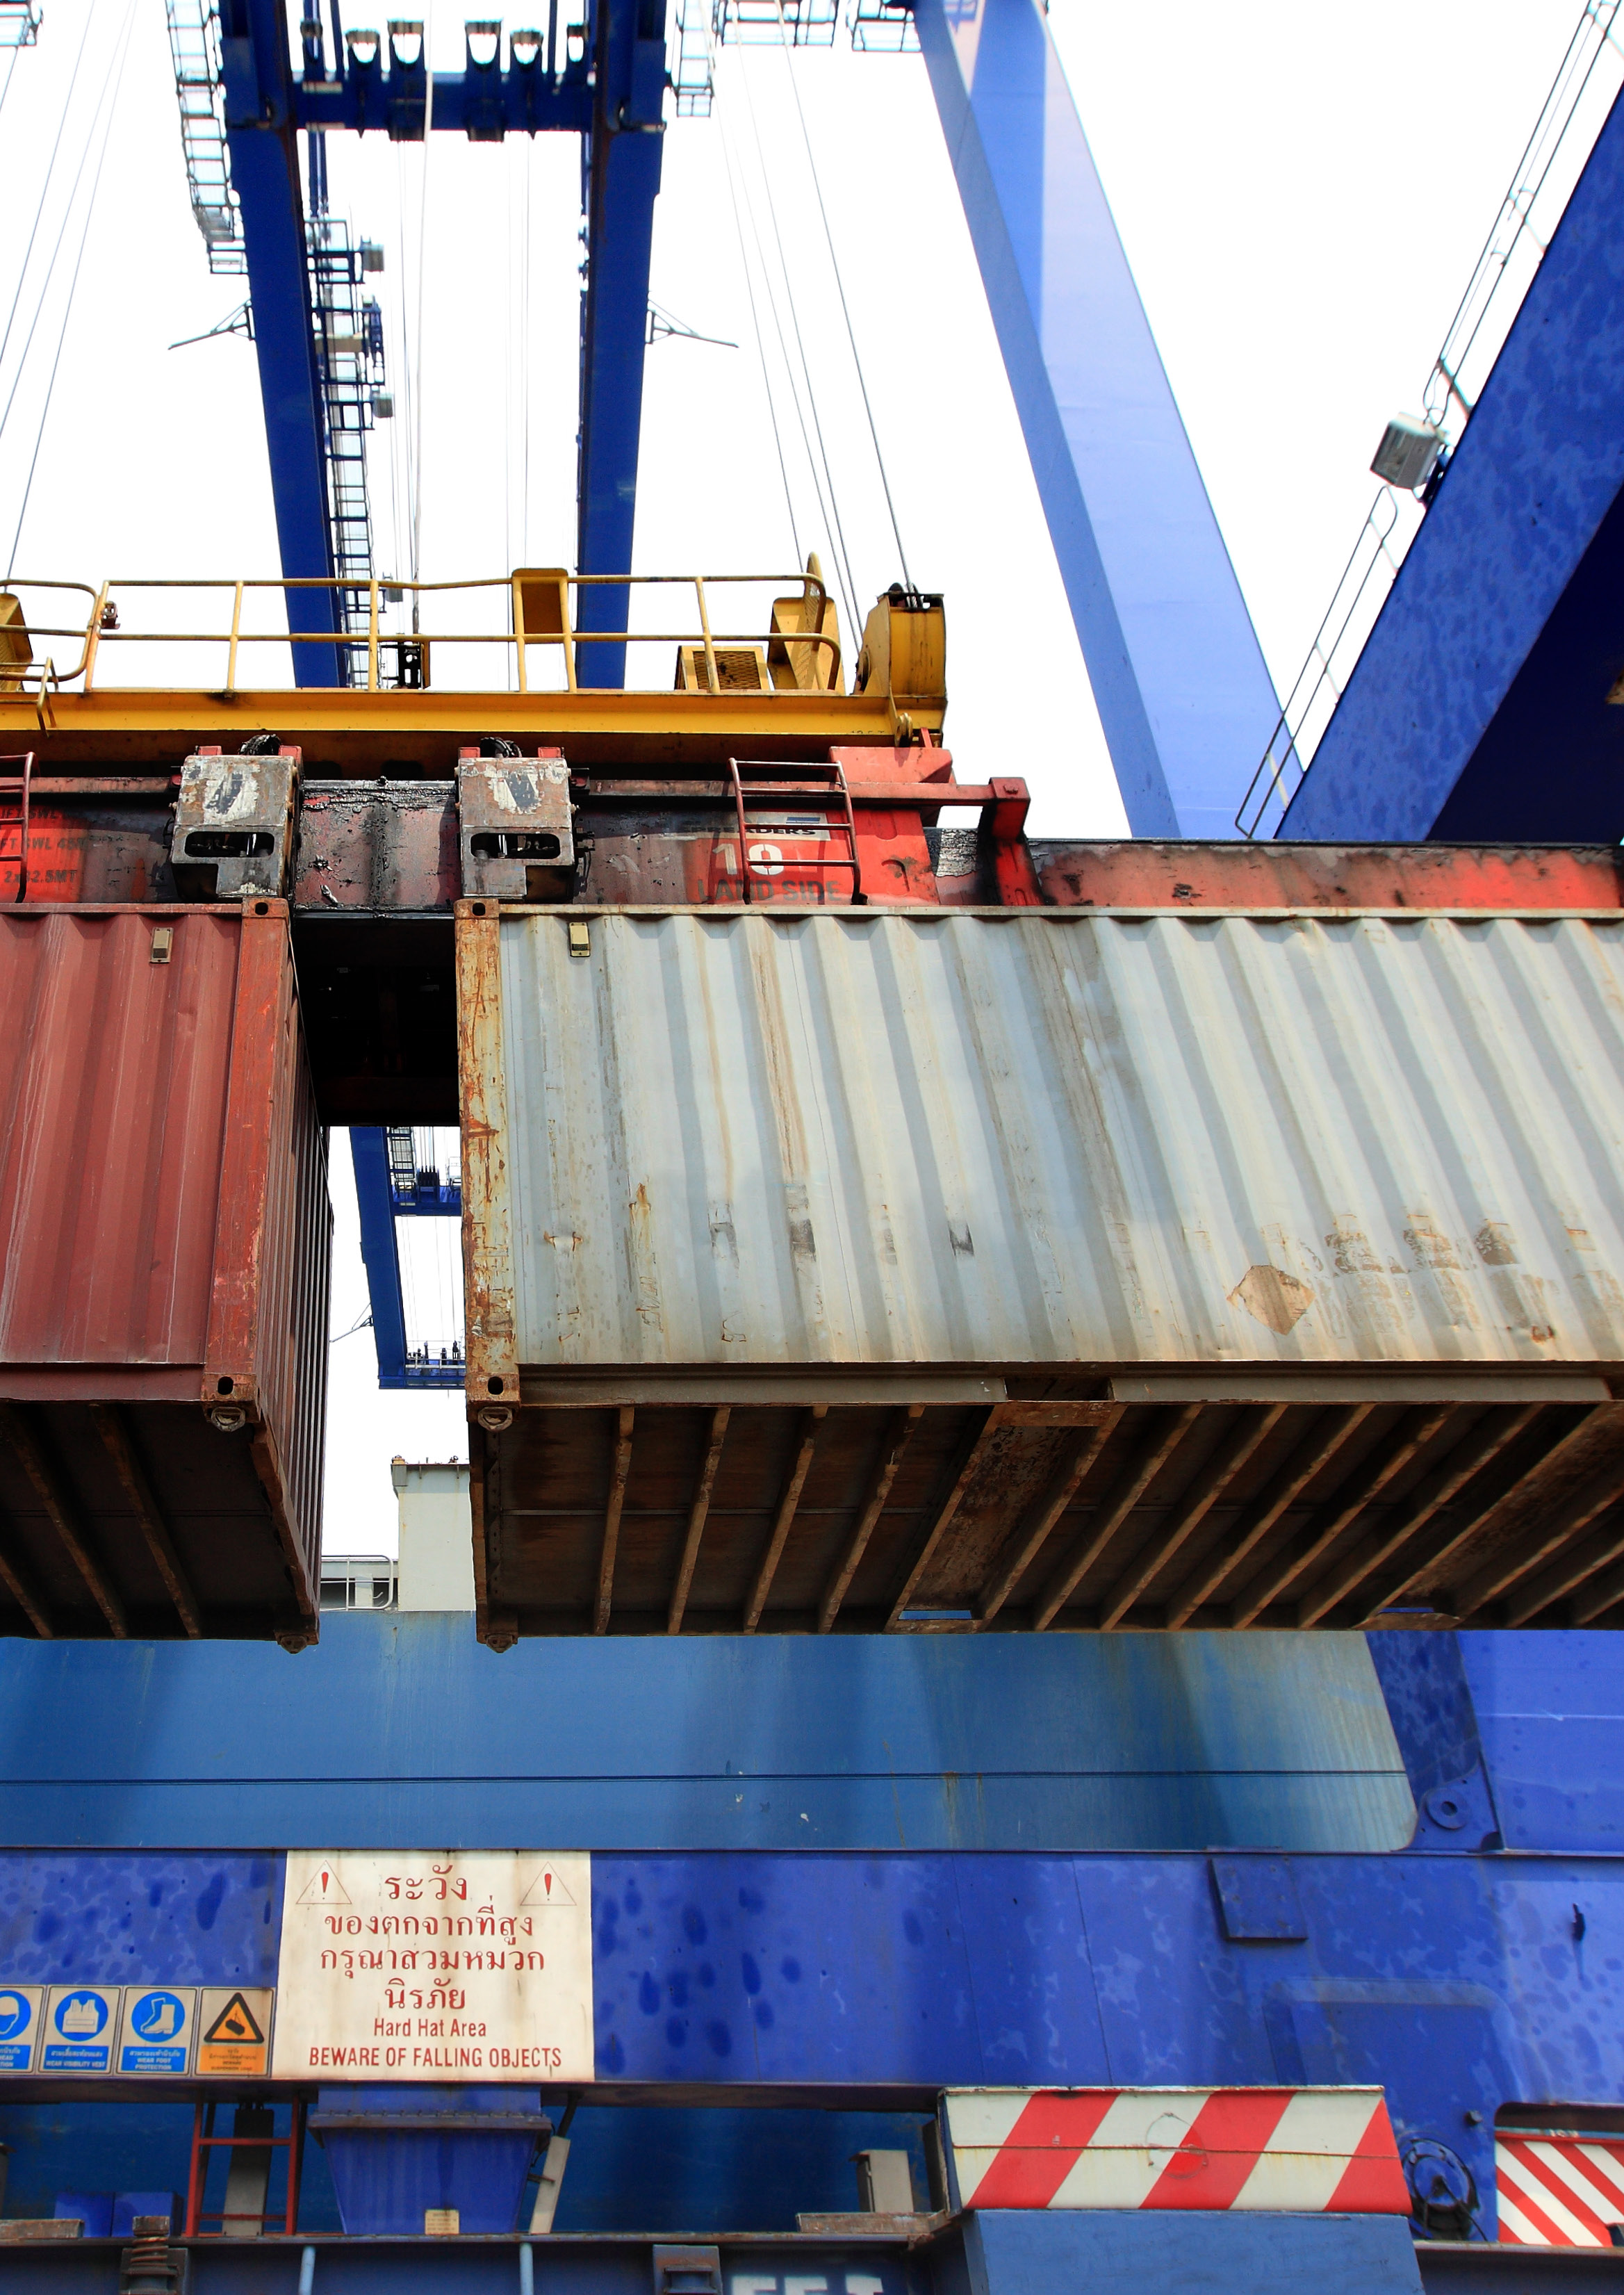 KONTRAKTSVILLKOR EXEMPLET ROTTERDAMS HAMN Från Rotterdams hamn transporteras de flesta containers vidare med lastbil in i landet. Transporterna medför trafikstockningar och försämrad luftkvalitet.